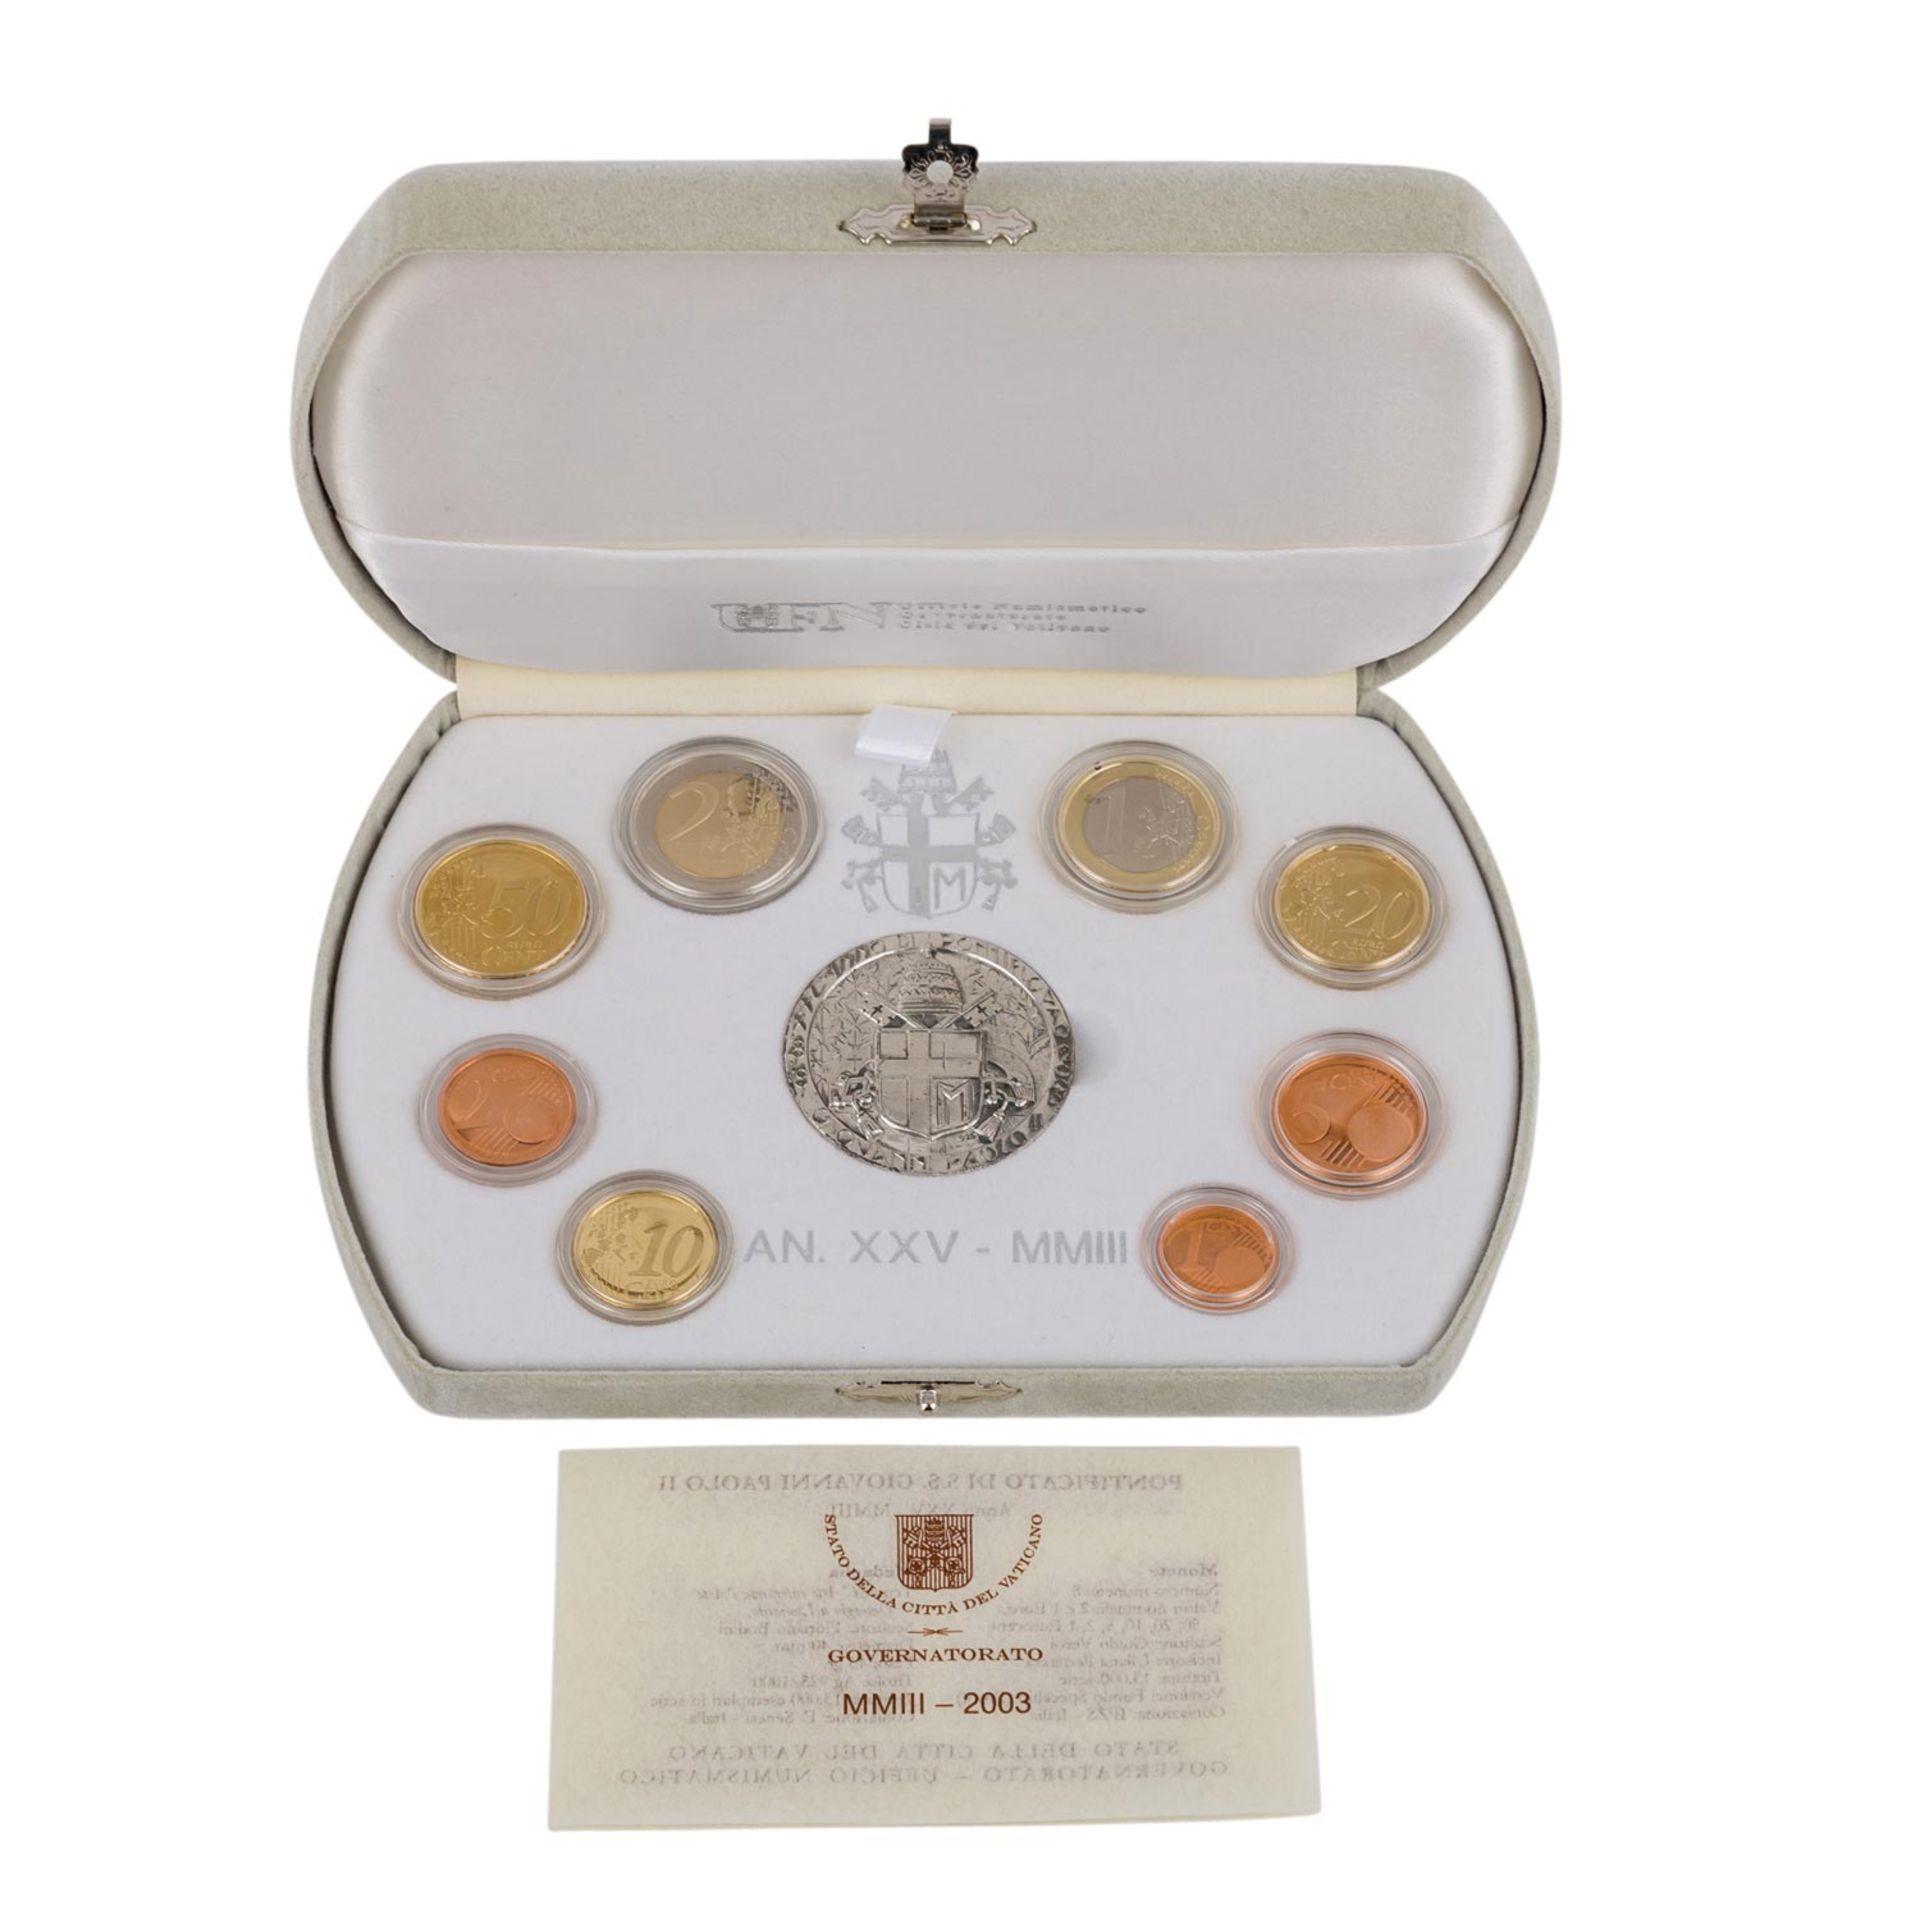 Vatikan - Prestige Euro-Kursmünzensatz mit Silbermedaille,Pontifikat Johannes Paul II. im Jahr 2003.